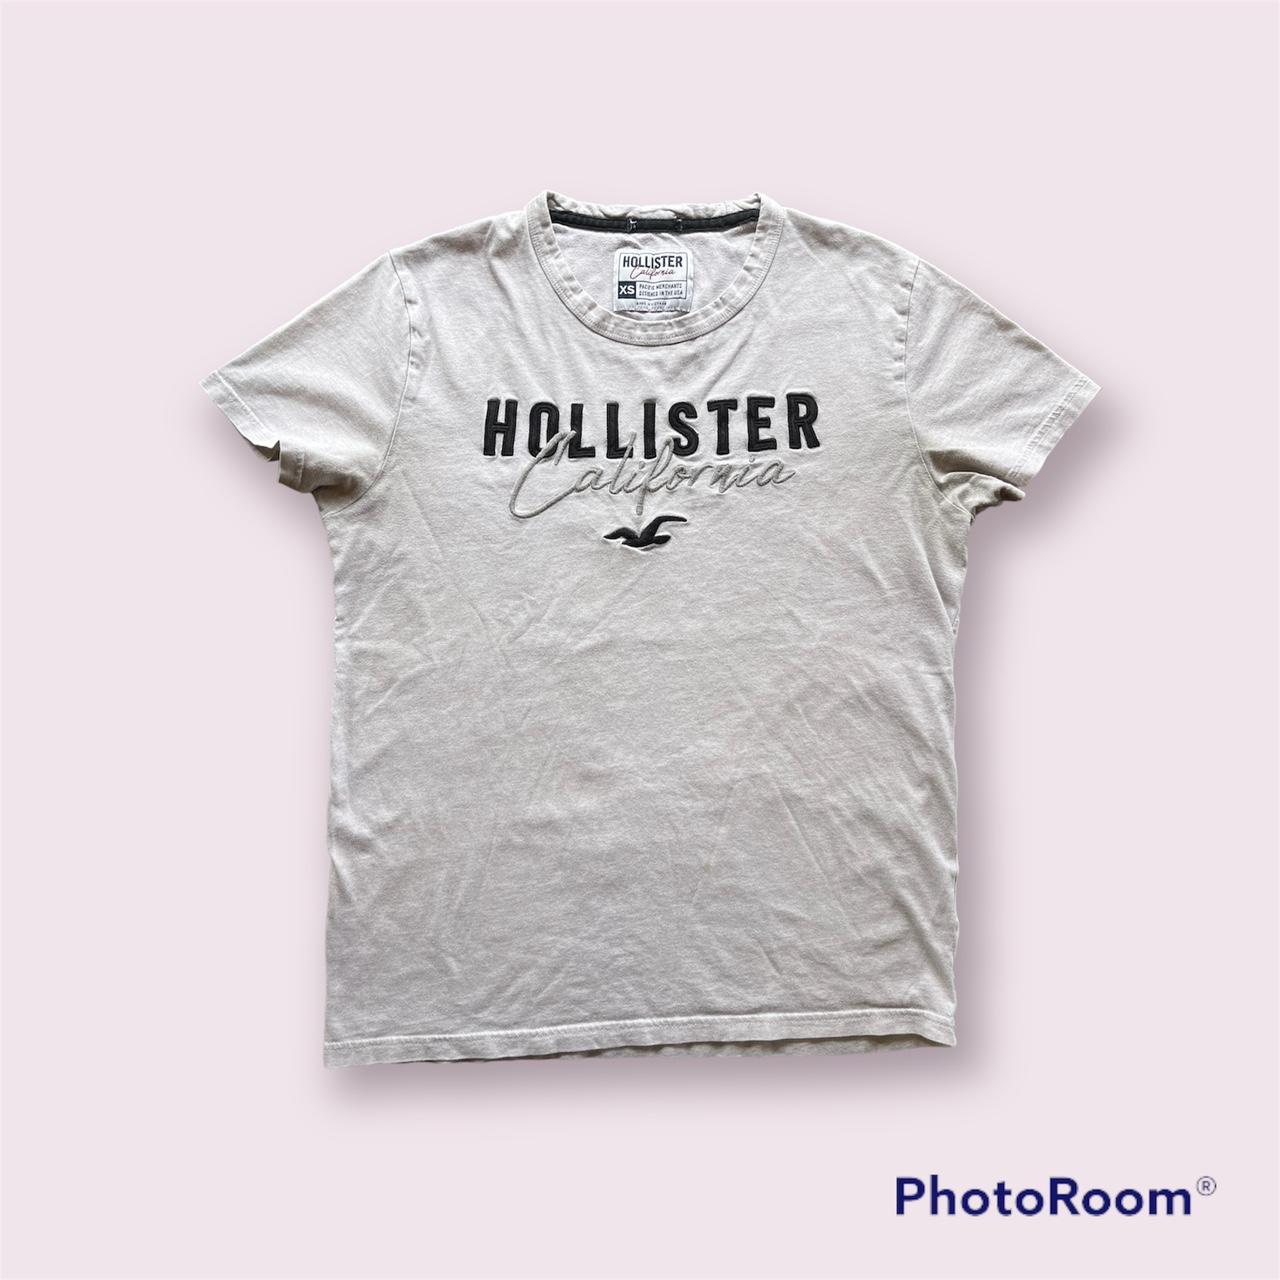 Hollister, California men's T-shirt size extra small - Depop